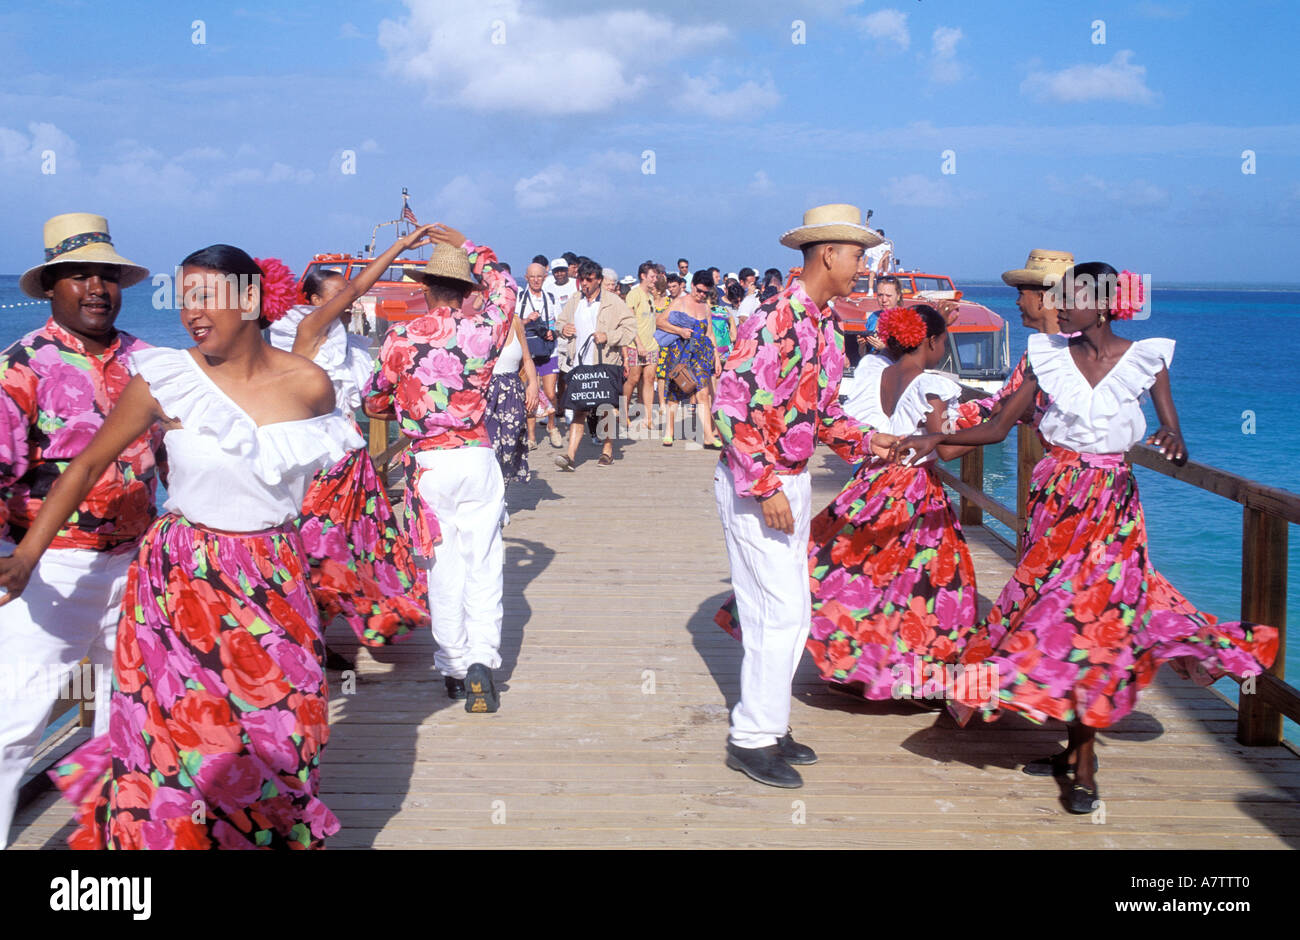 Dominican Republic, folklore show on the Costa Classica cruise Stock Photo